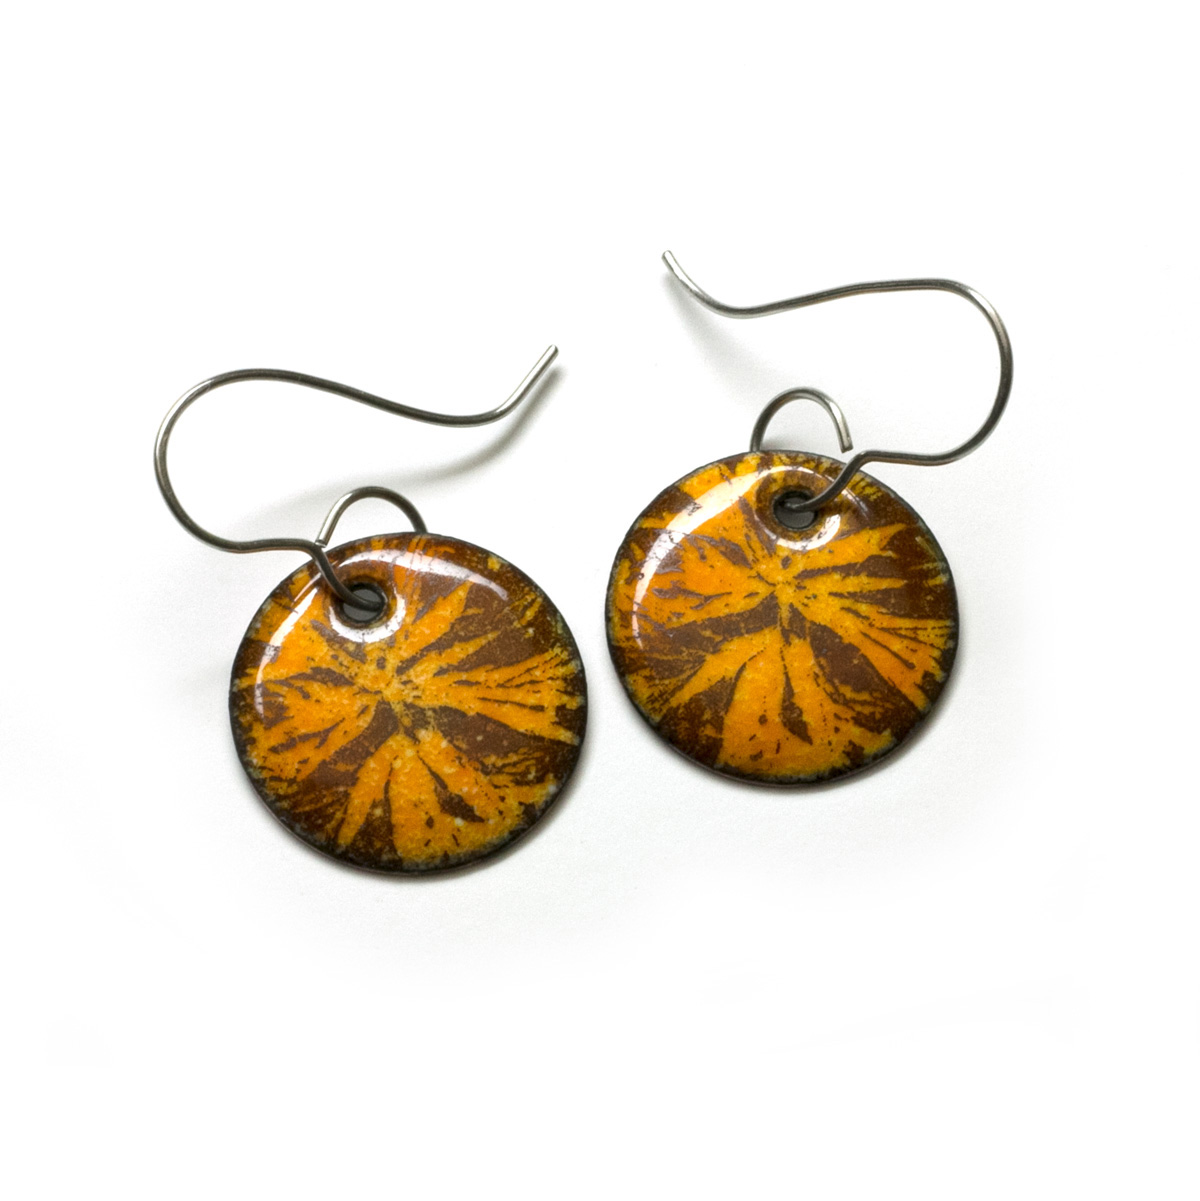 orange enamel botanical earrings with stainless steel earwires